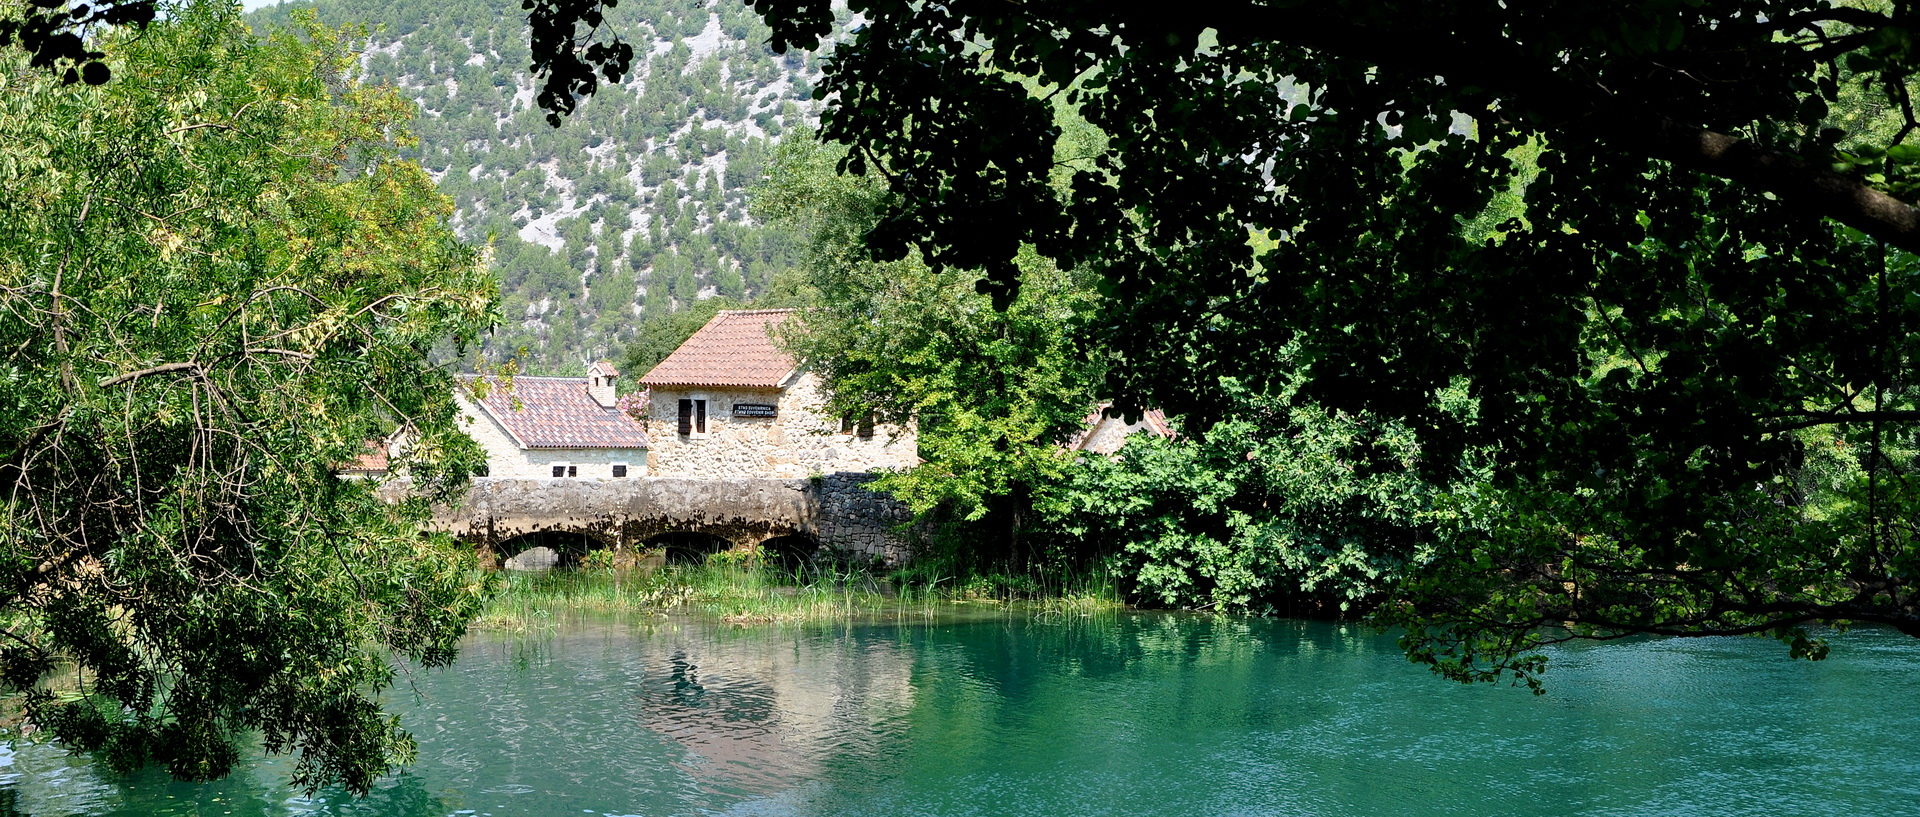 Этно деревня Национальный парк Крка Хорватия 